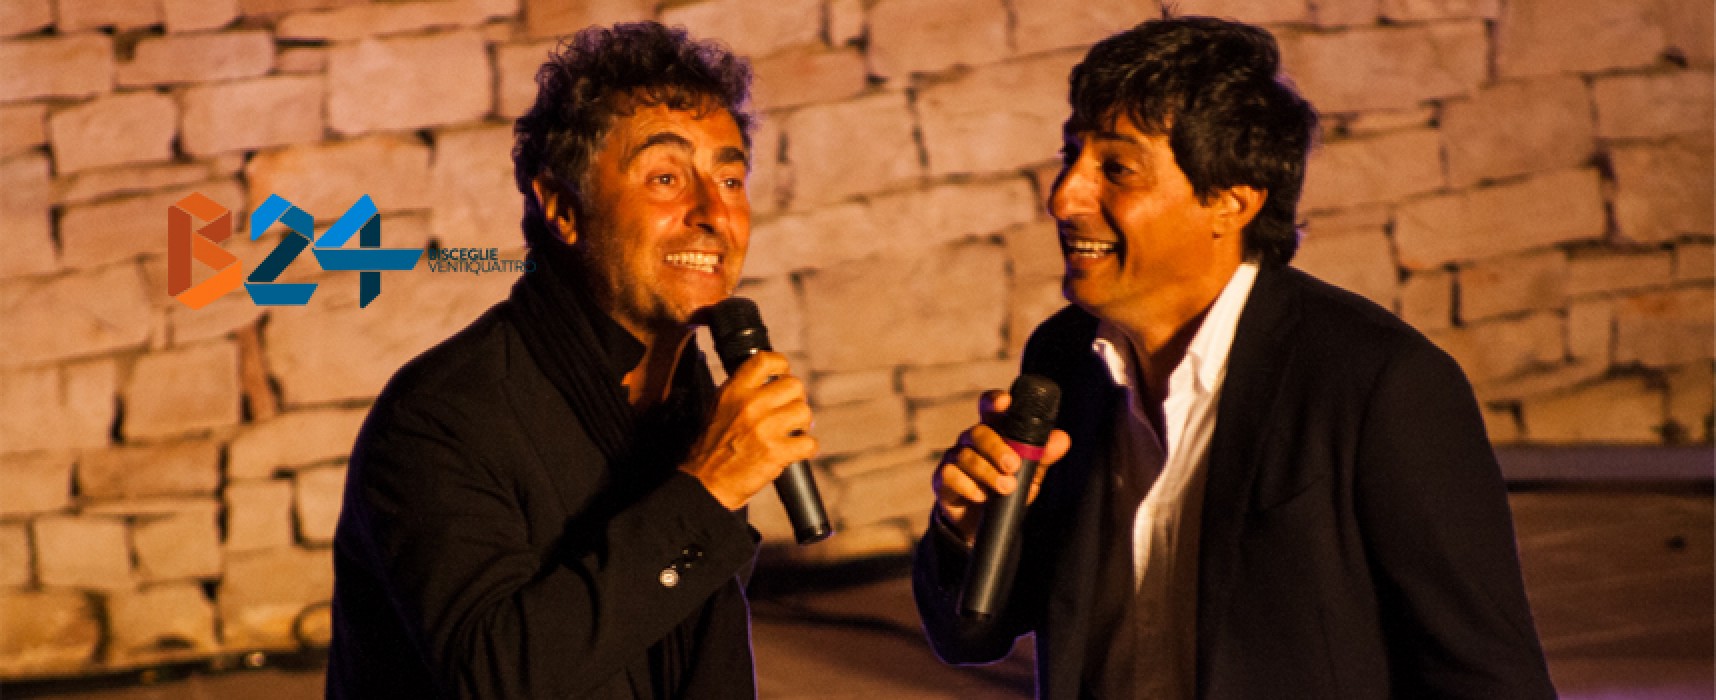 Risate e spensieratezza al teatro Mediterraneo per Solfrizzi e Stornaiolo / FOTO E VIDEO